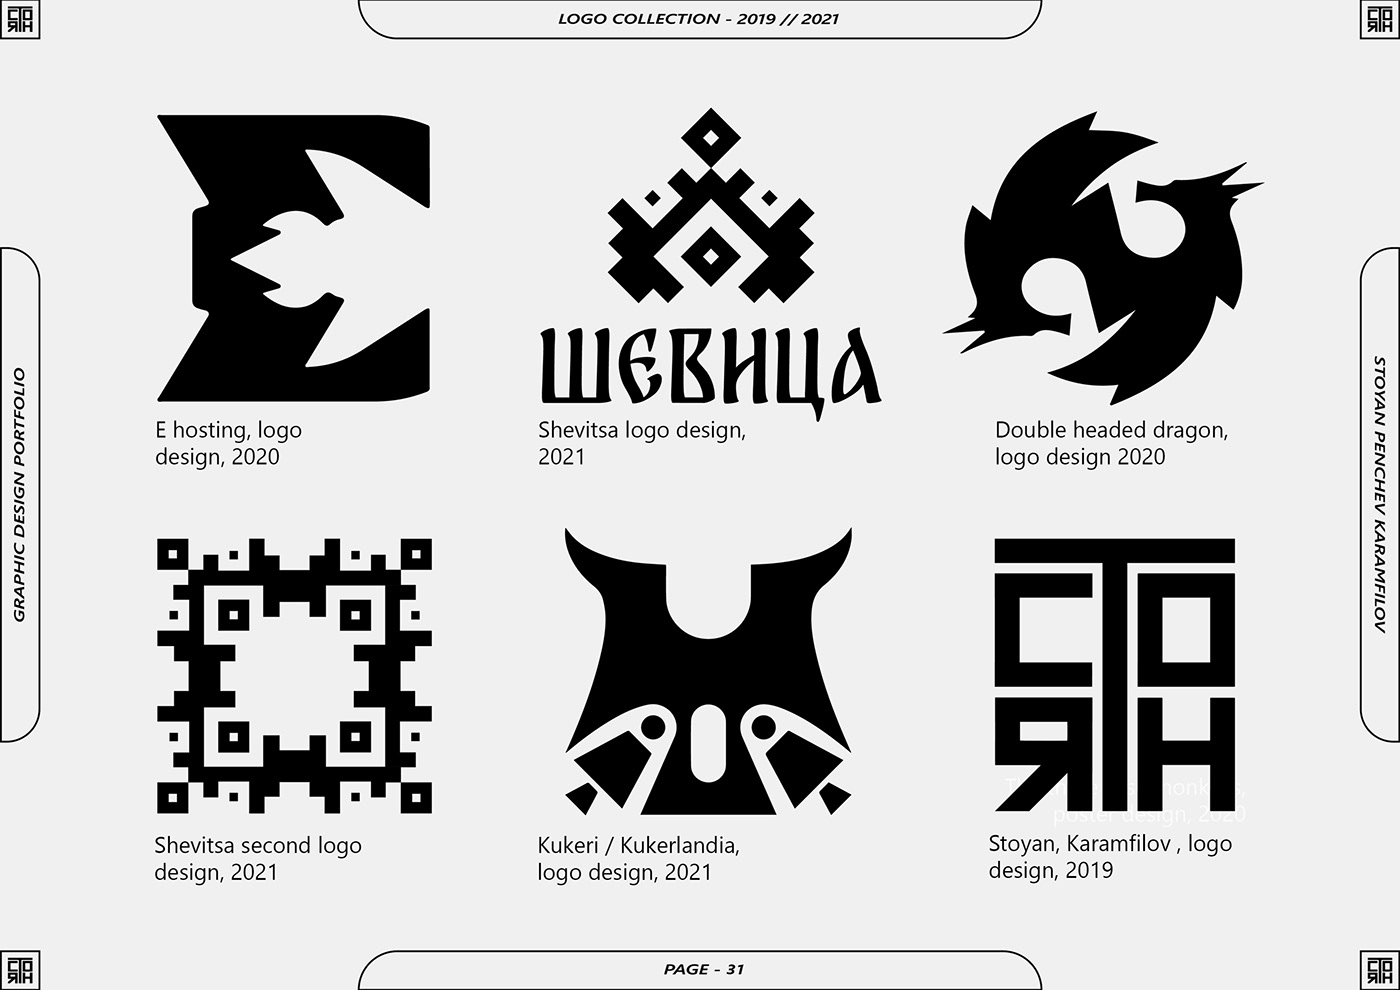 album cover branding  bulgaria graphic design  logo portfolio poster visual identity Packaging graphic design portfolio